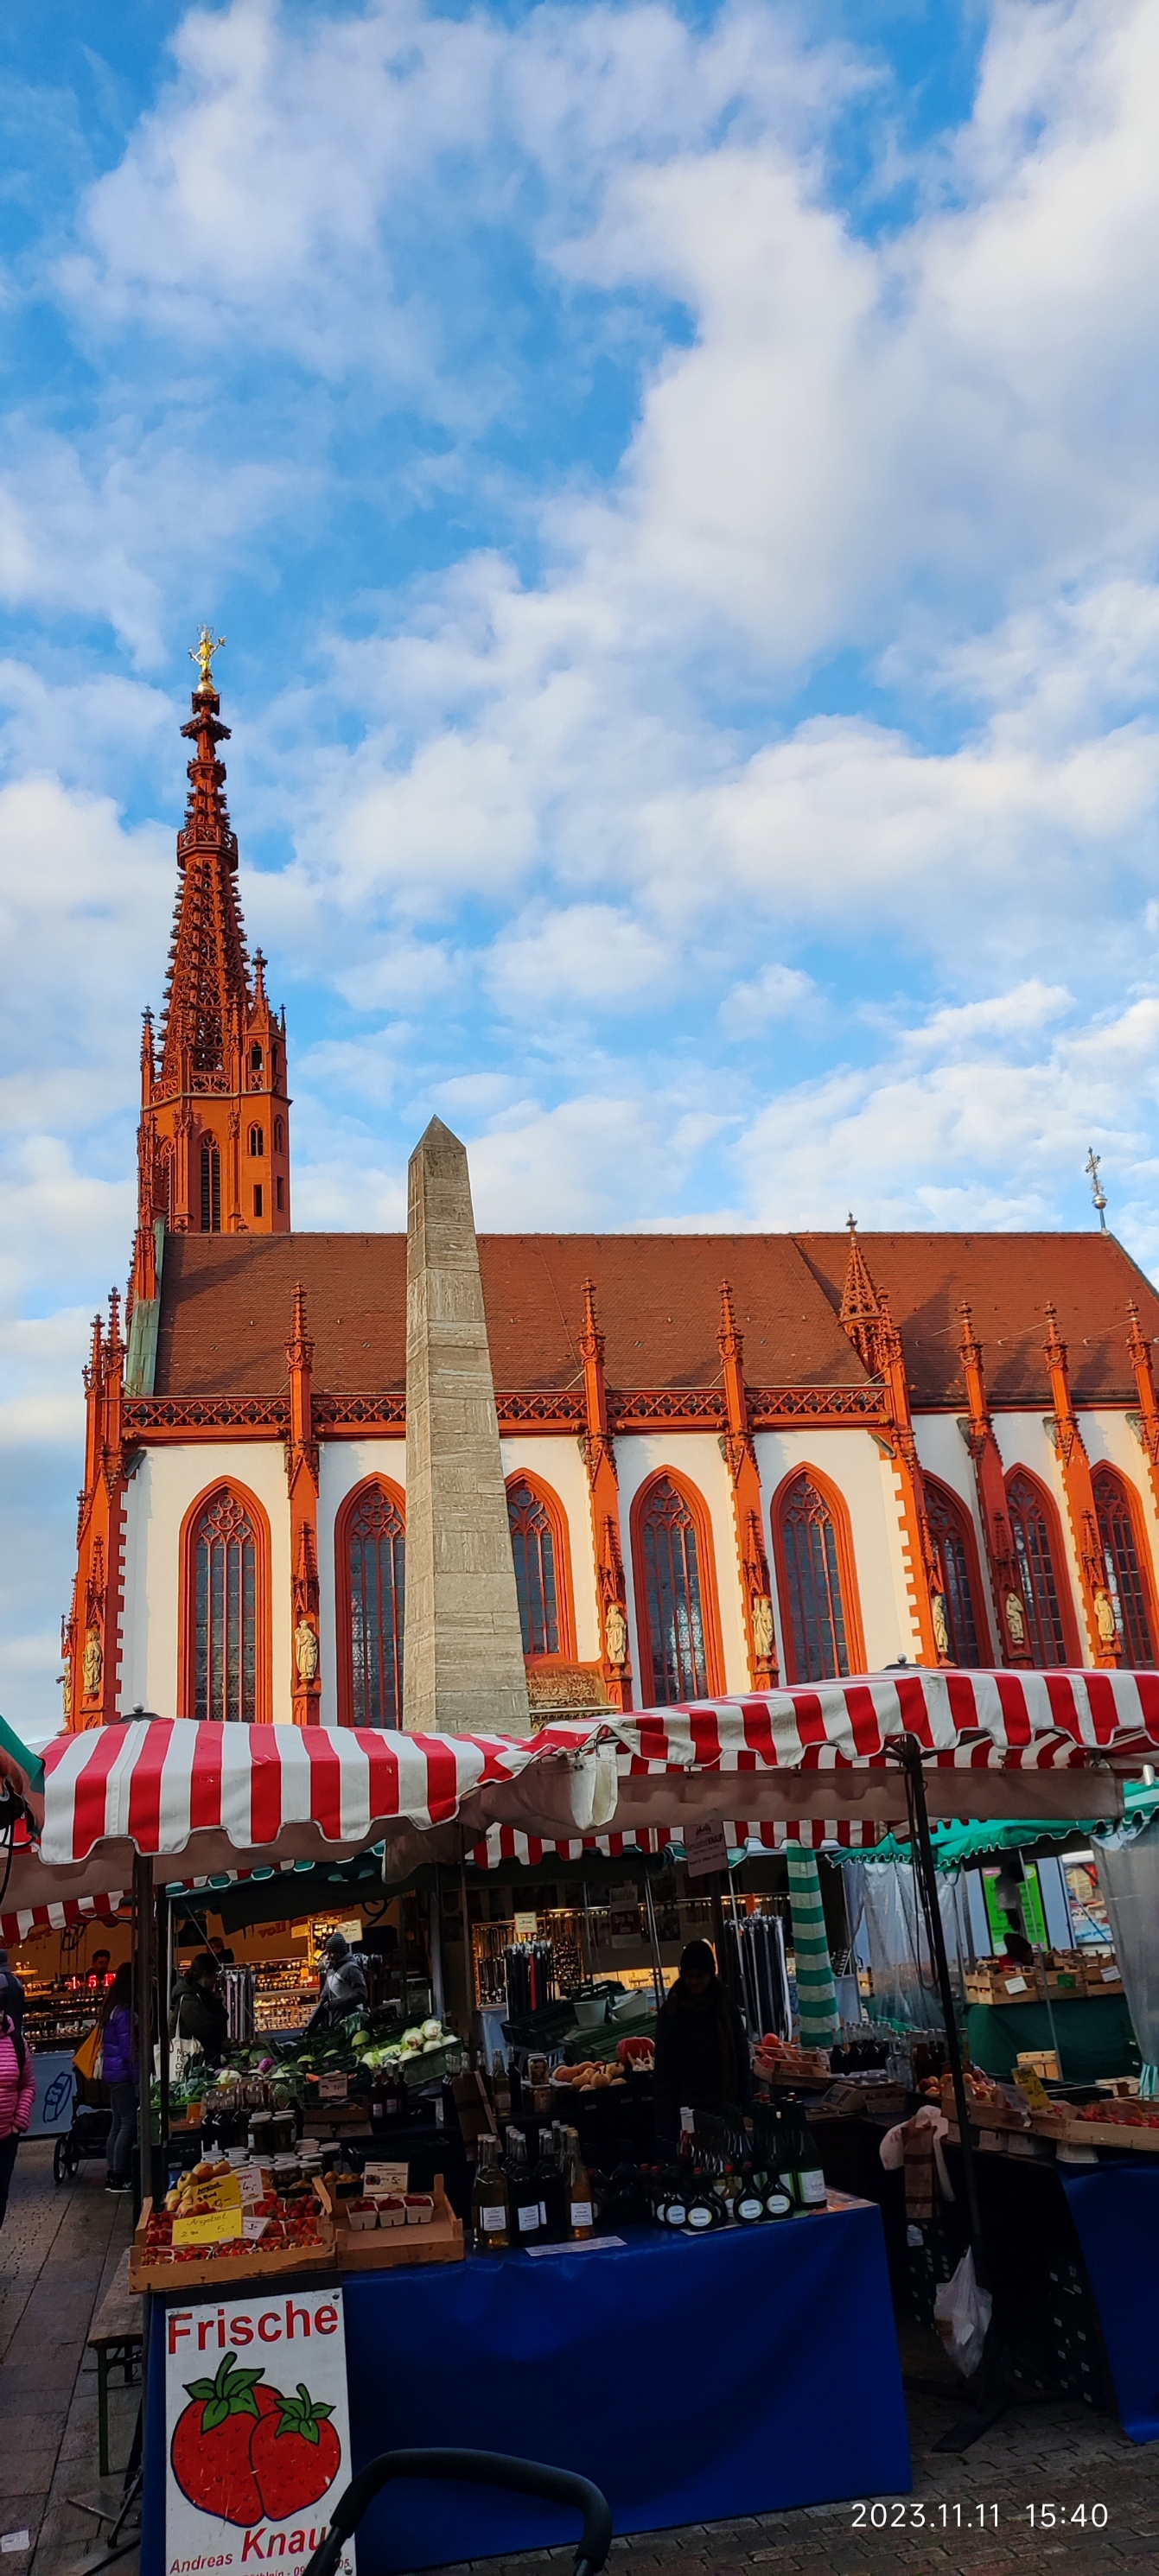 红得亮眼的维尔茨堡圣母礼拜堂。说起来德国的教堂免费，但是大多不开门。